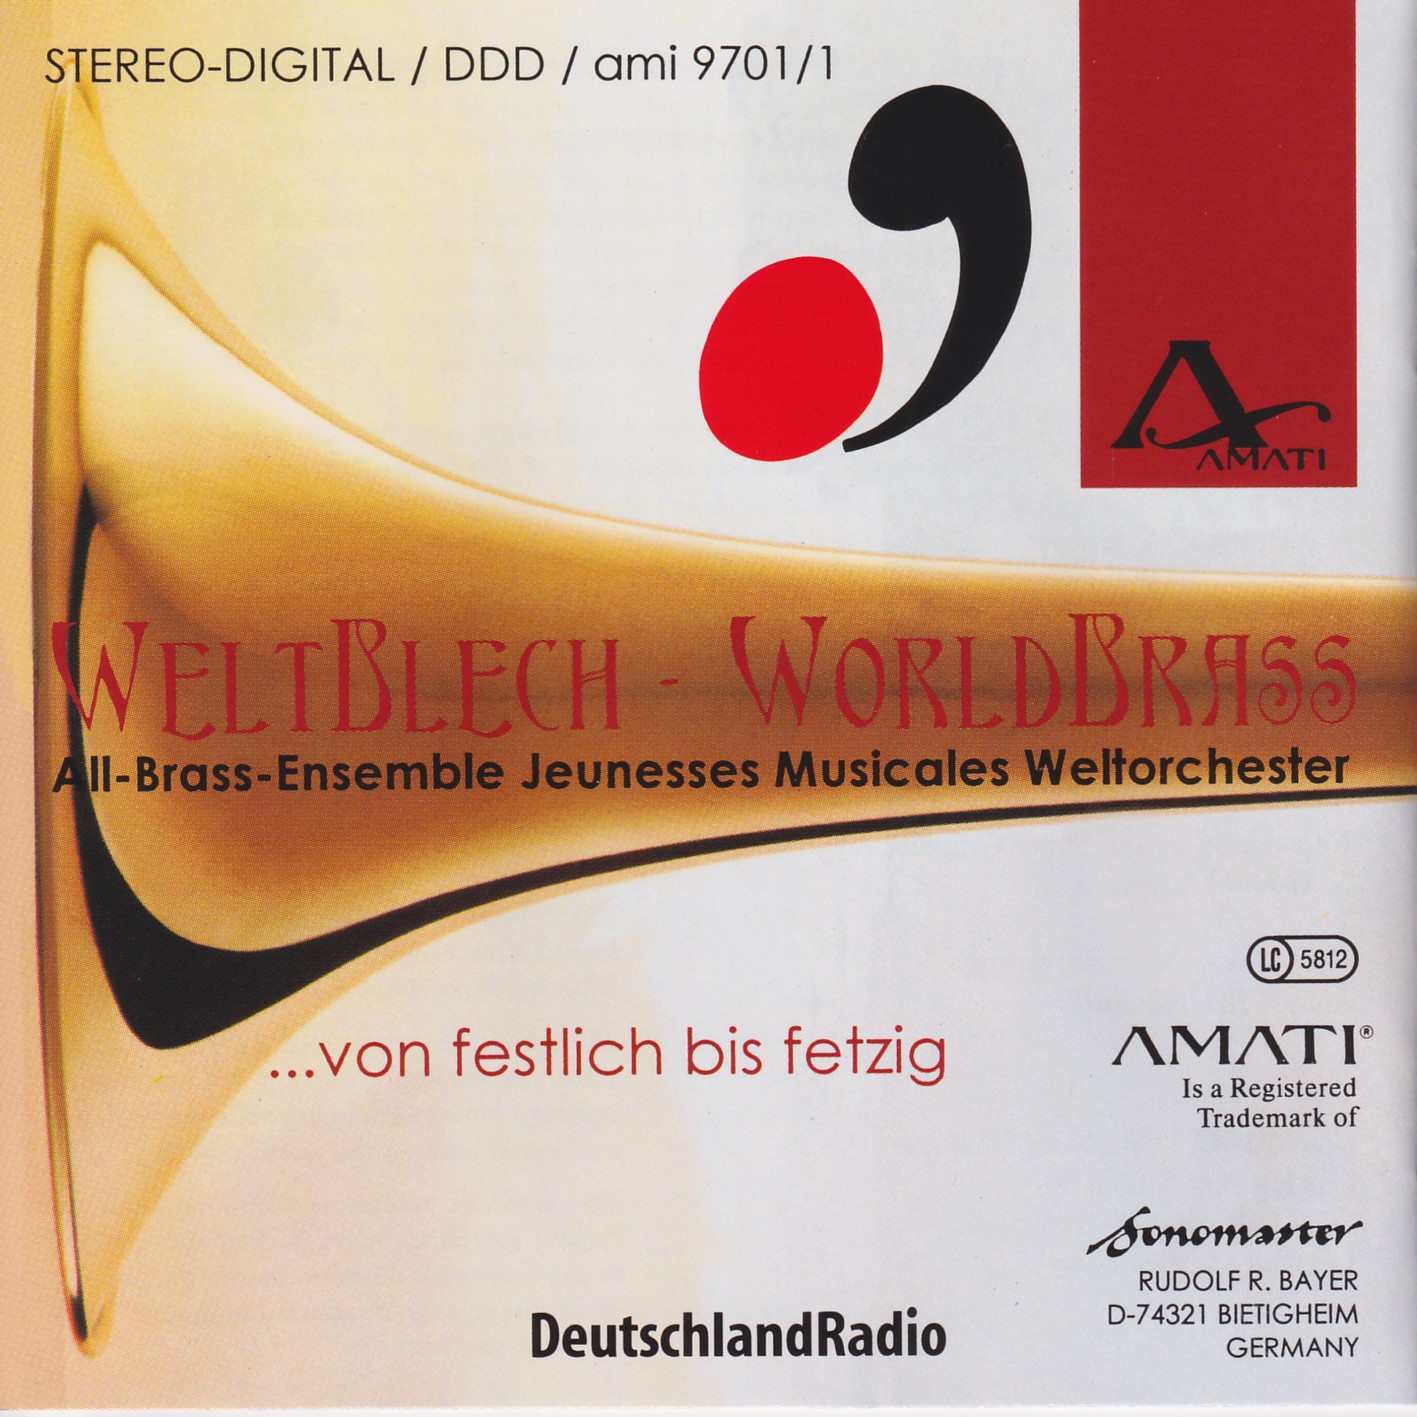 World Brass - Weltblech